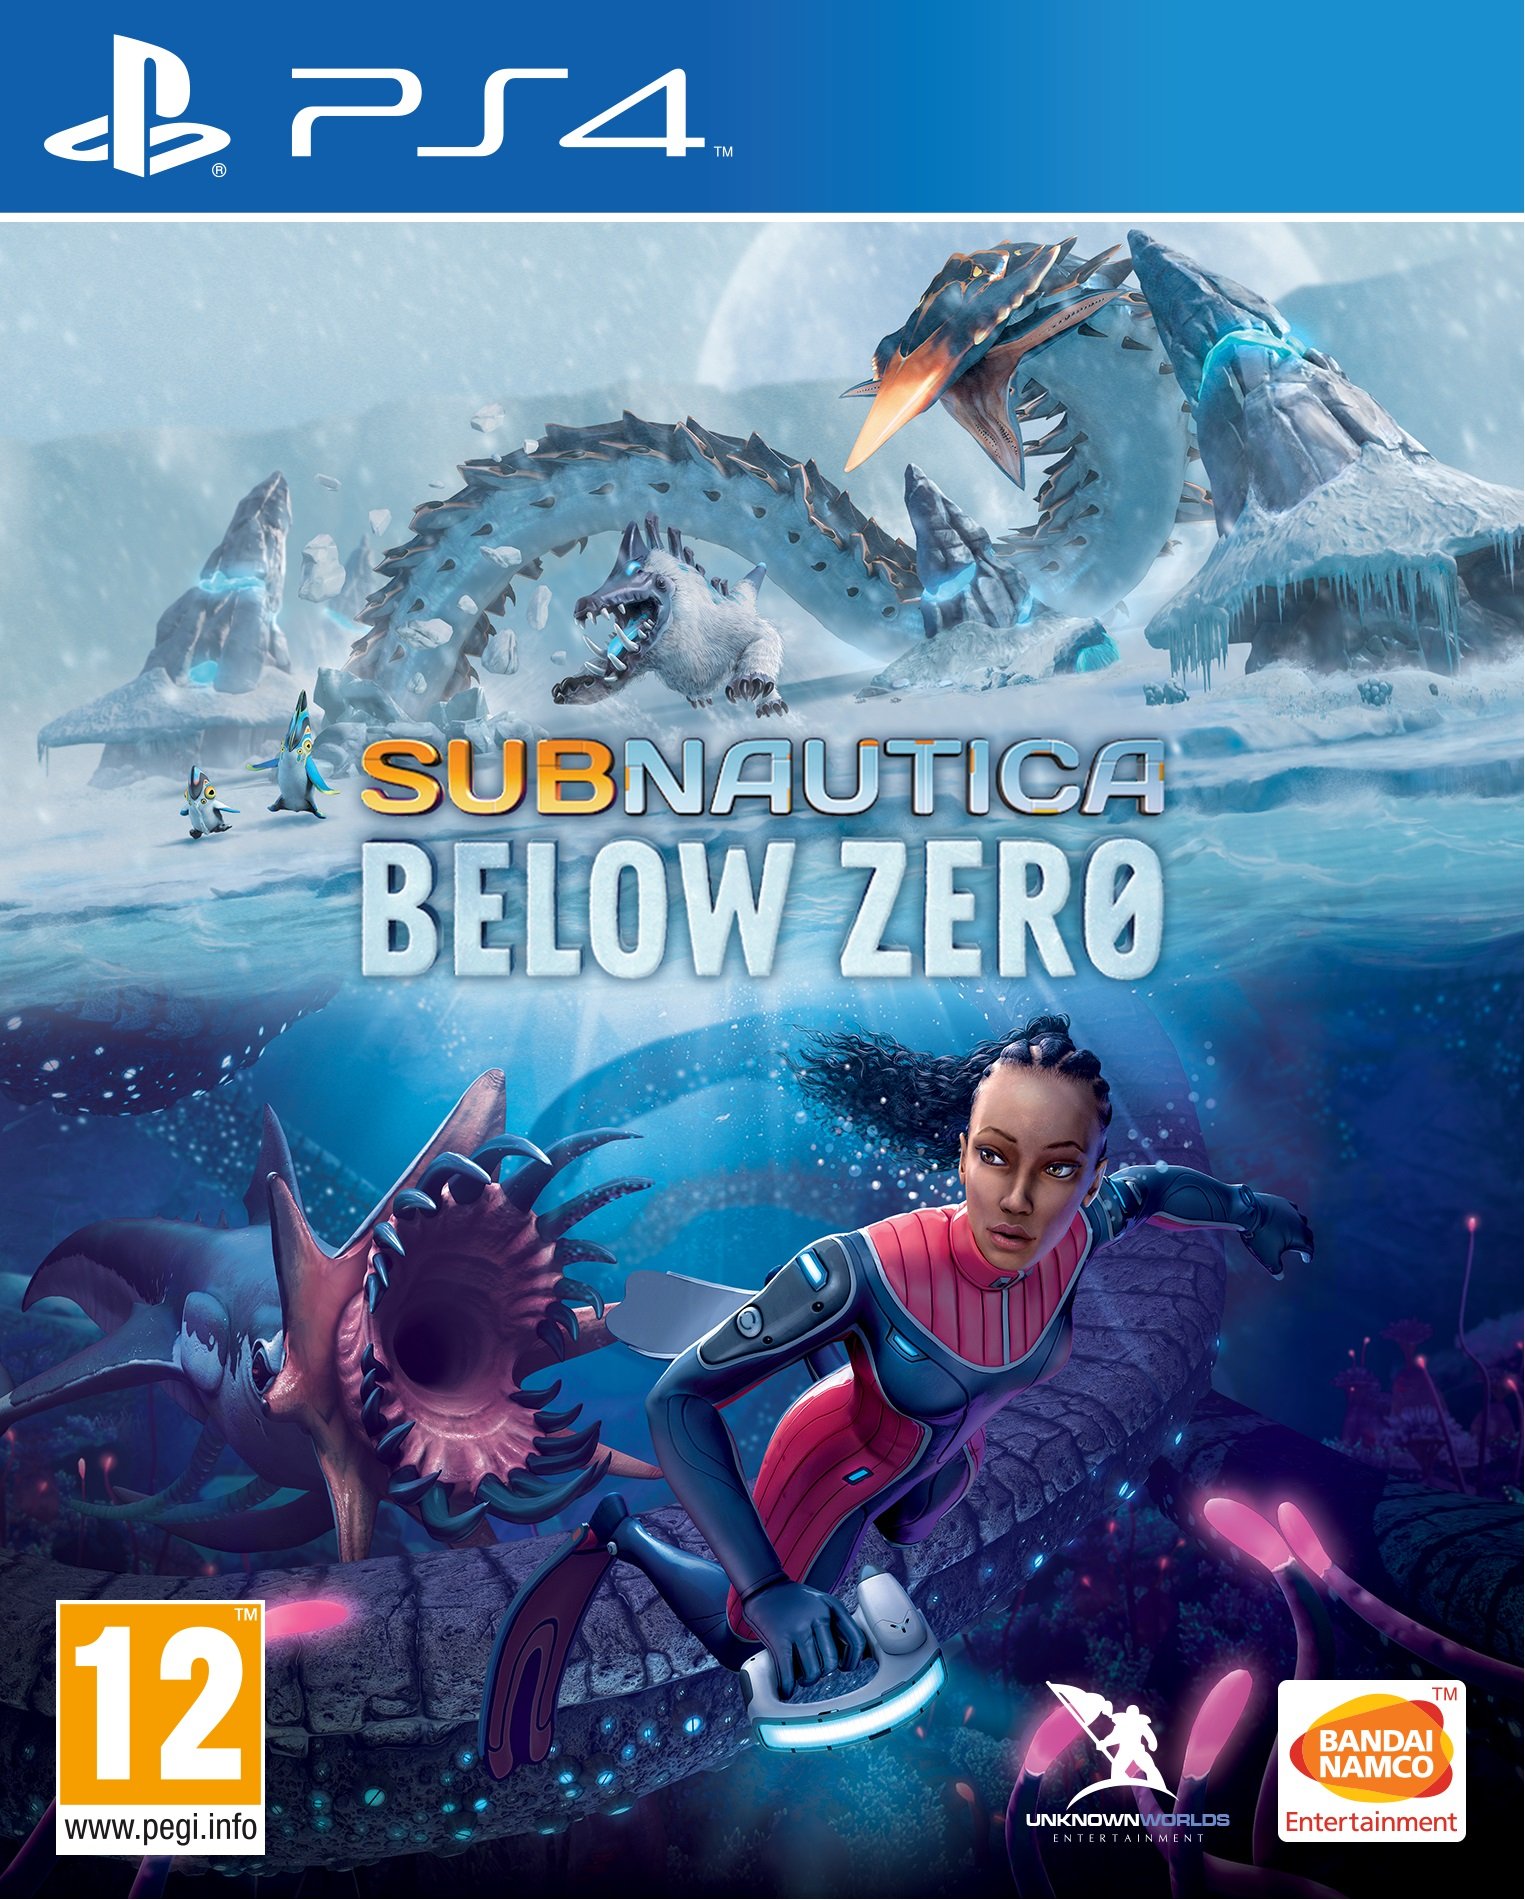 subnautica below zero release date on xbox